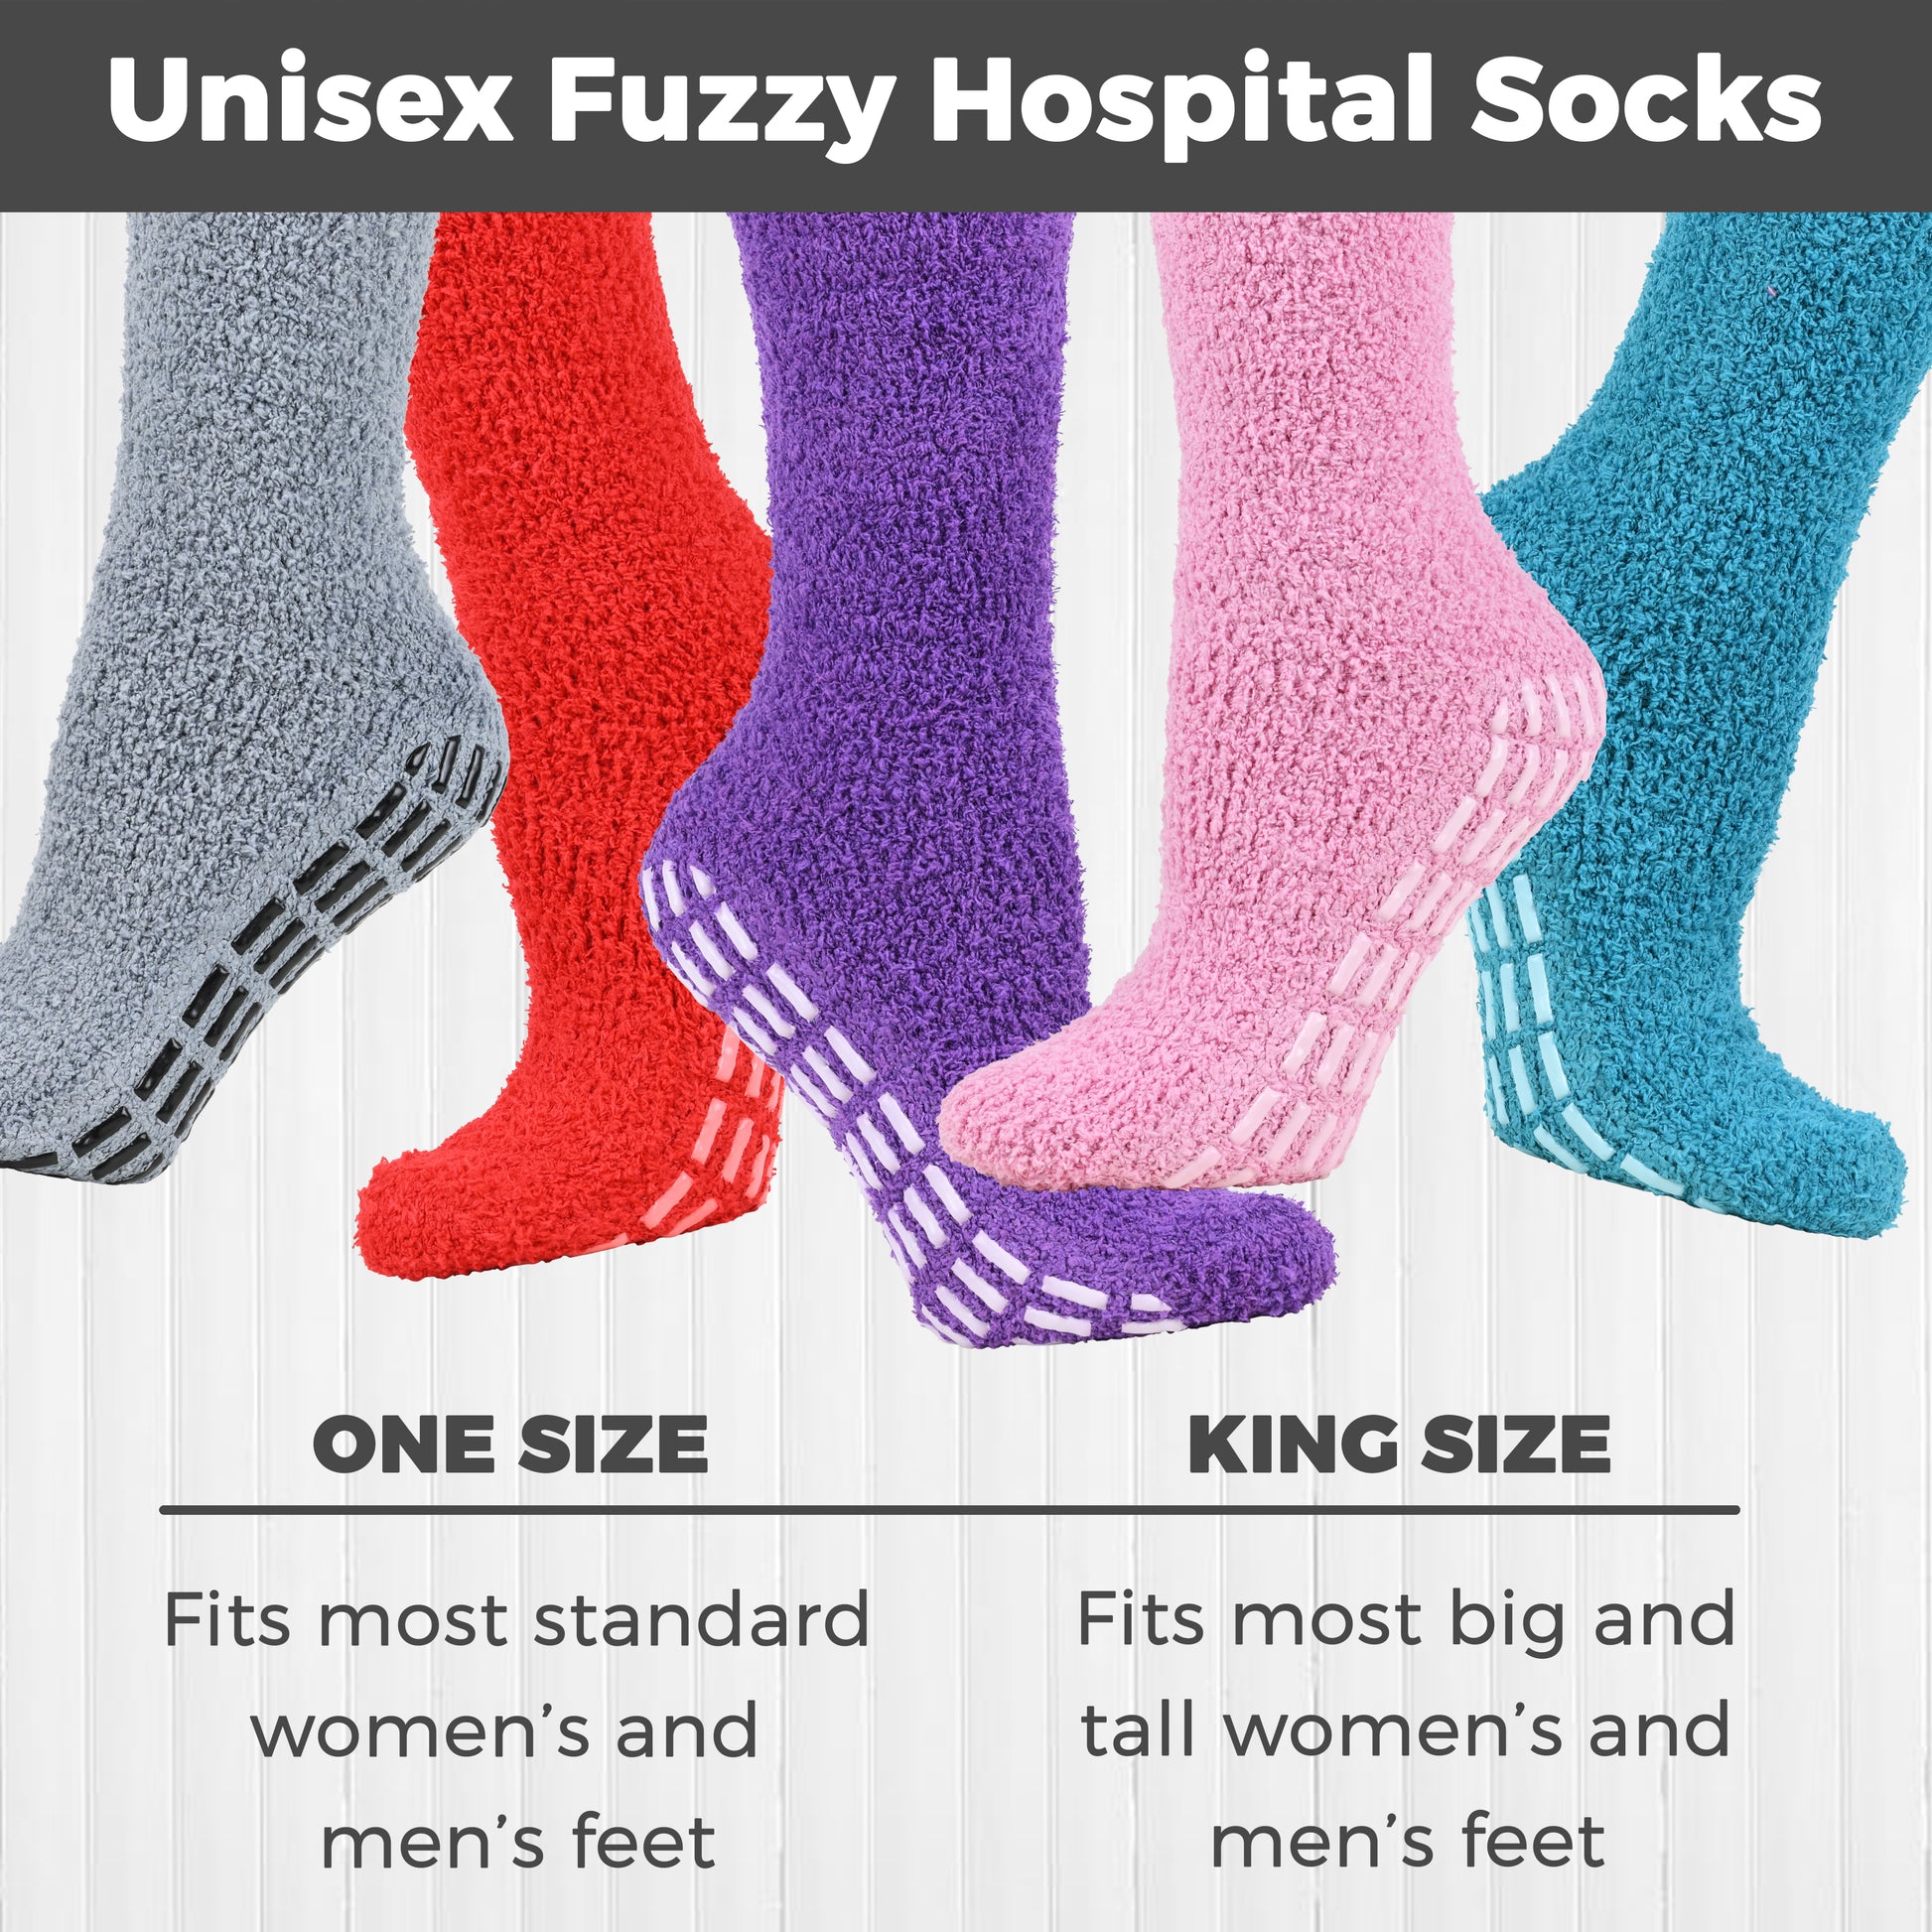 Daventry Thick Fuzzy Grippy Socks for Women and Men, Slipper Socks for  Women, No Slip Non Skid Grip